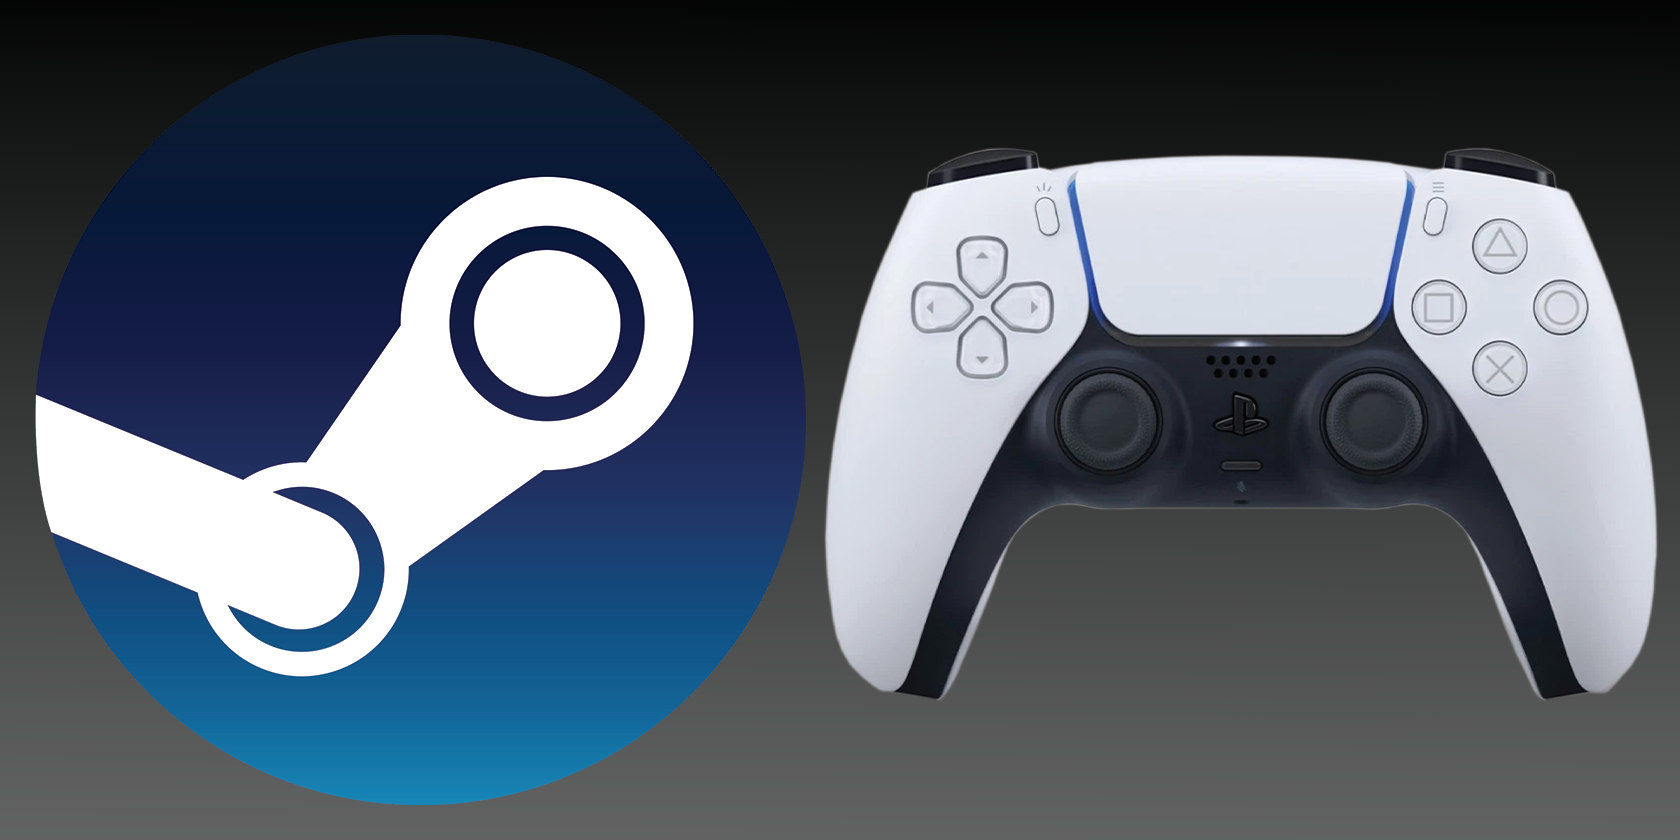 steam logo and dualsense controller